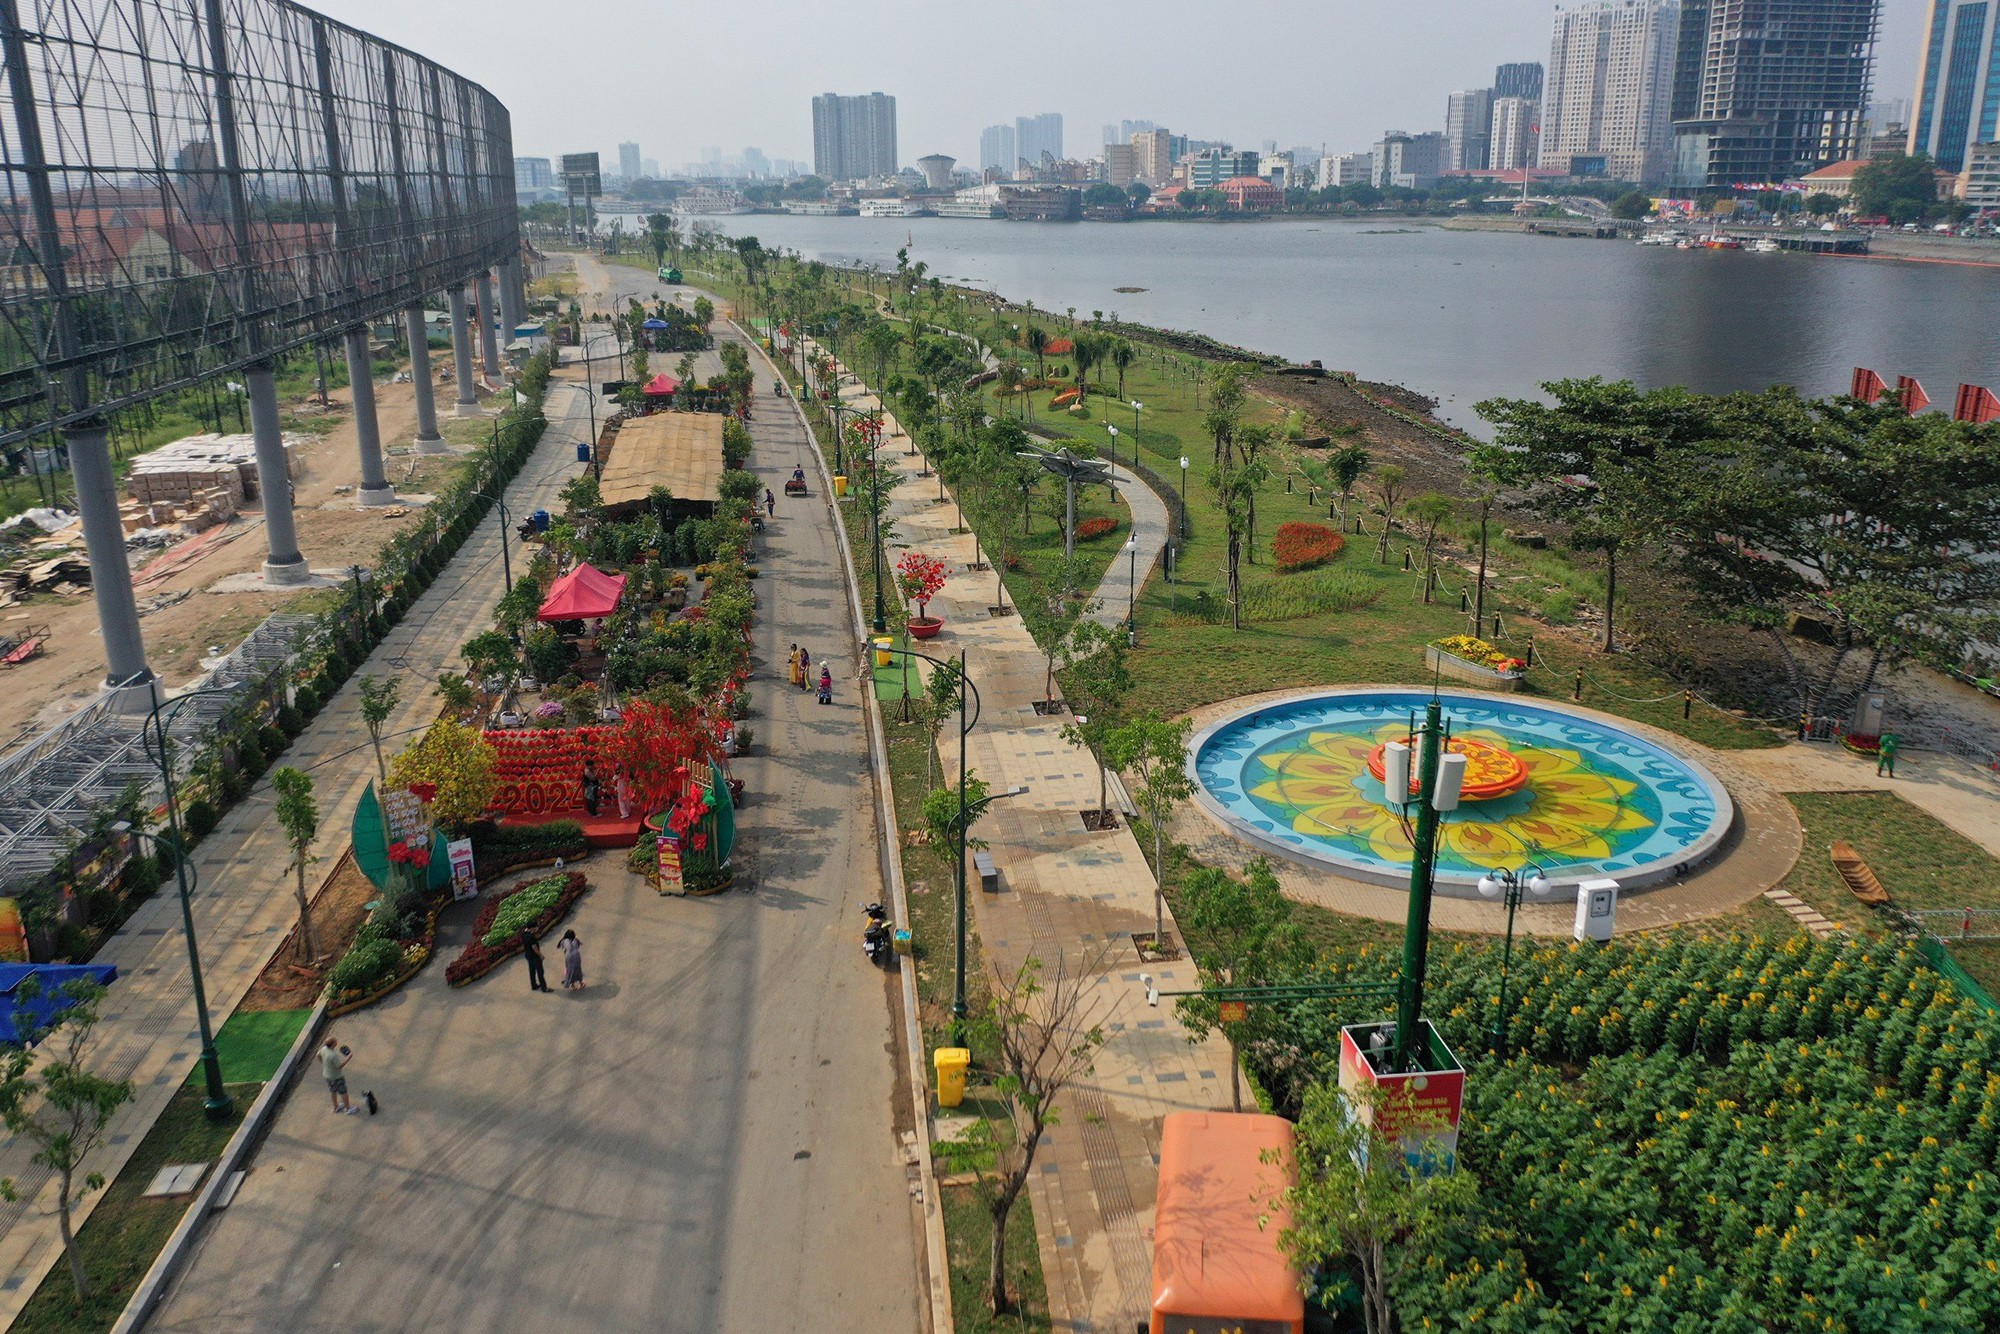 Thời điểm khánh thành những hạng mục đầu tiên dịp Tết dương lịch 2024, công viên bờ sông Sài Gòn thu hút đông đảo người dân và du khách đến tham quan, vui chơi mỗi ngày. Dự kiến, công viên sẽ trở thành điểm tham quan hấp dẫn cho người dân dịp Tết Nguyên đán 2024 khi nhiều công trình mới được đưa vào sử dụng.